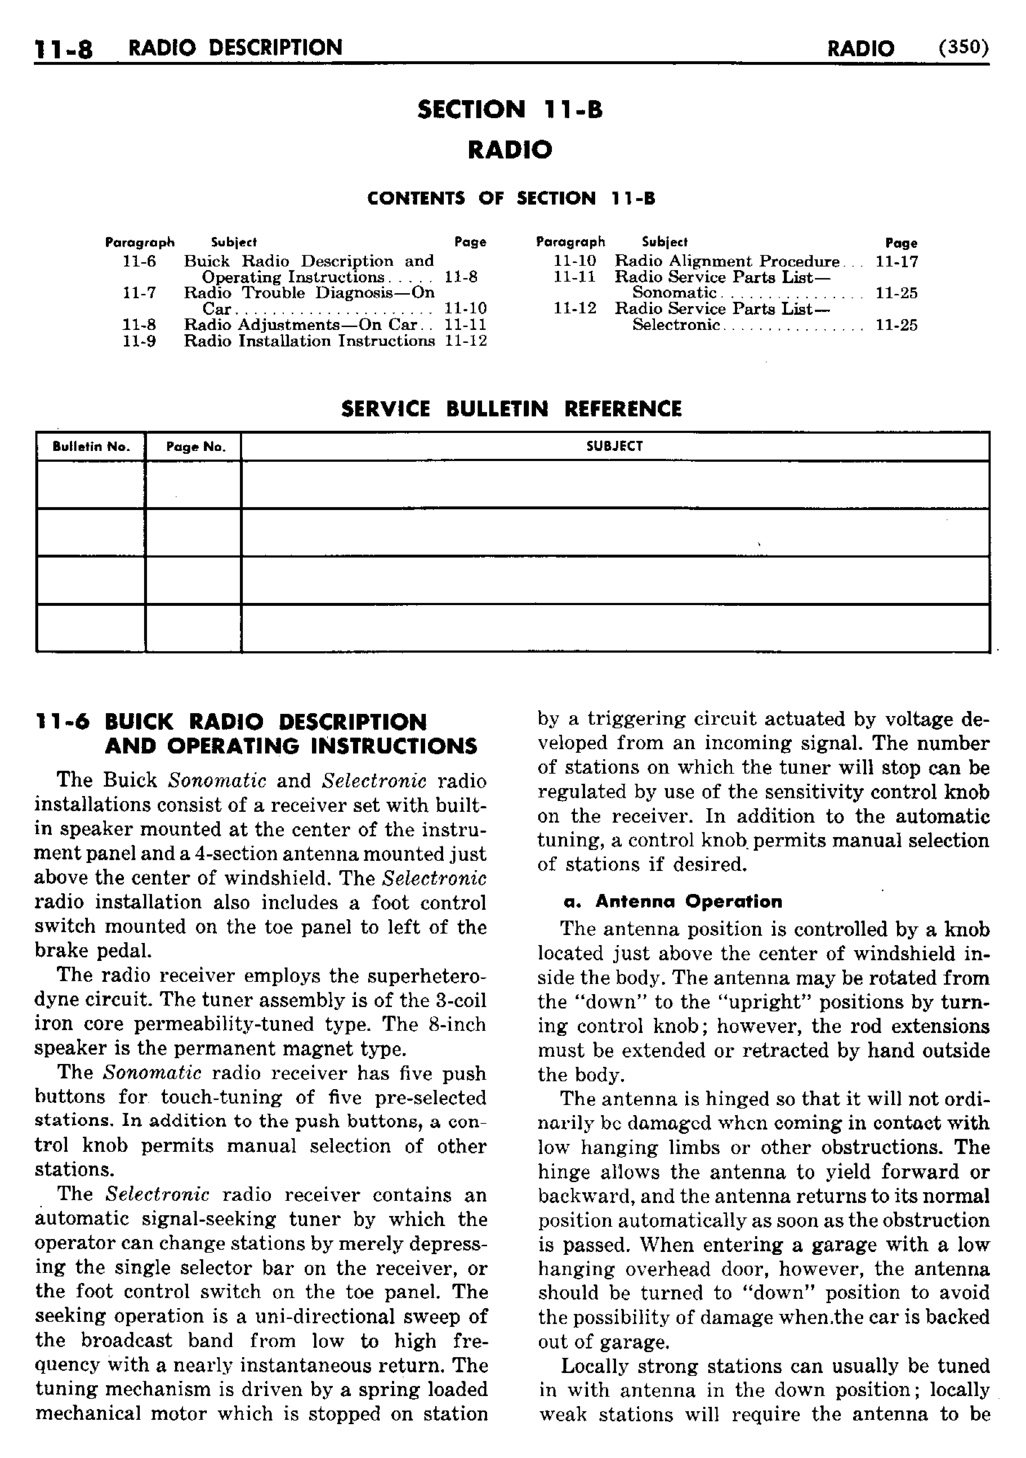 n_12 1950 Buick Shop Manual - Accessories-008-008.jpg